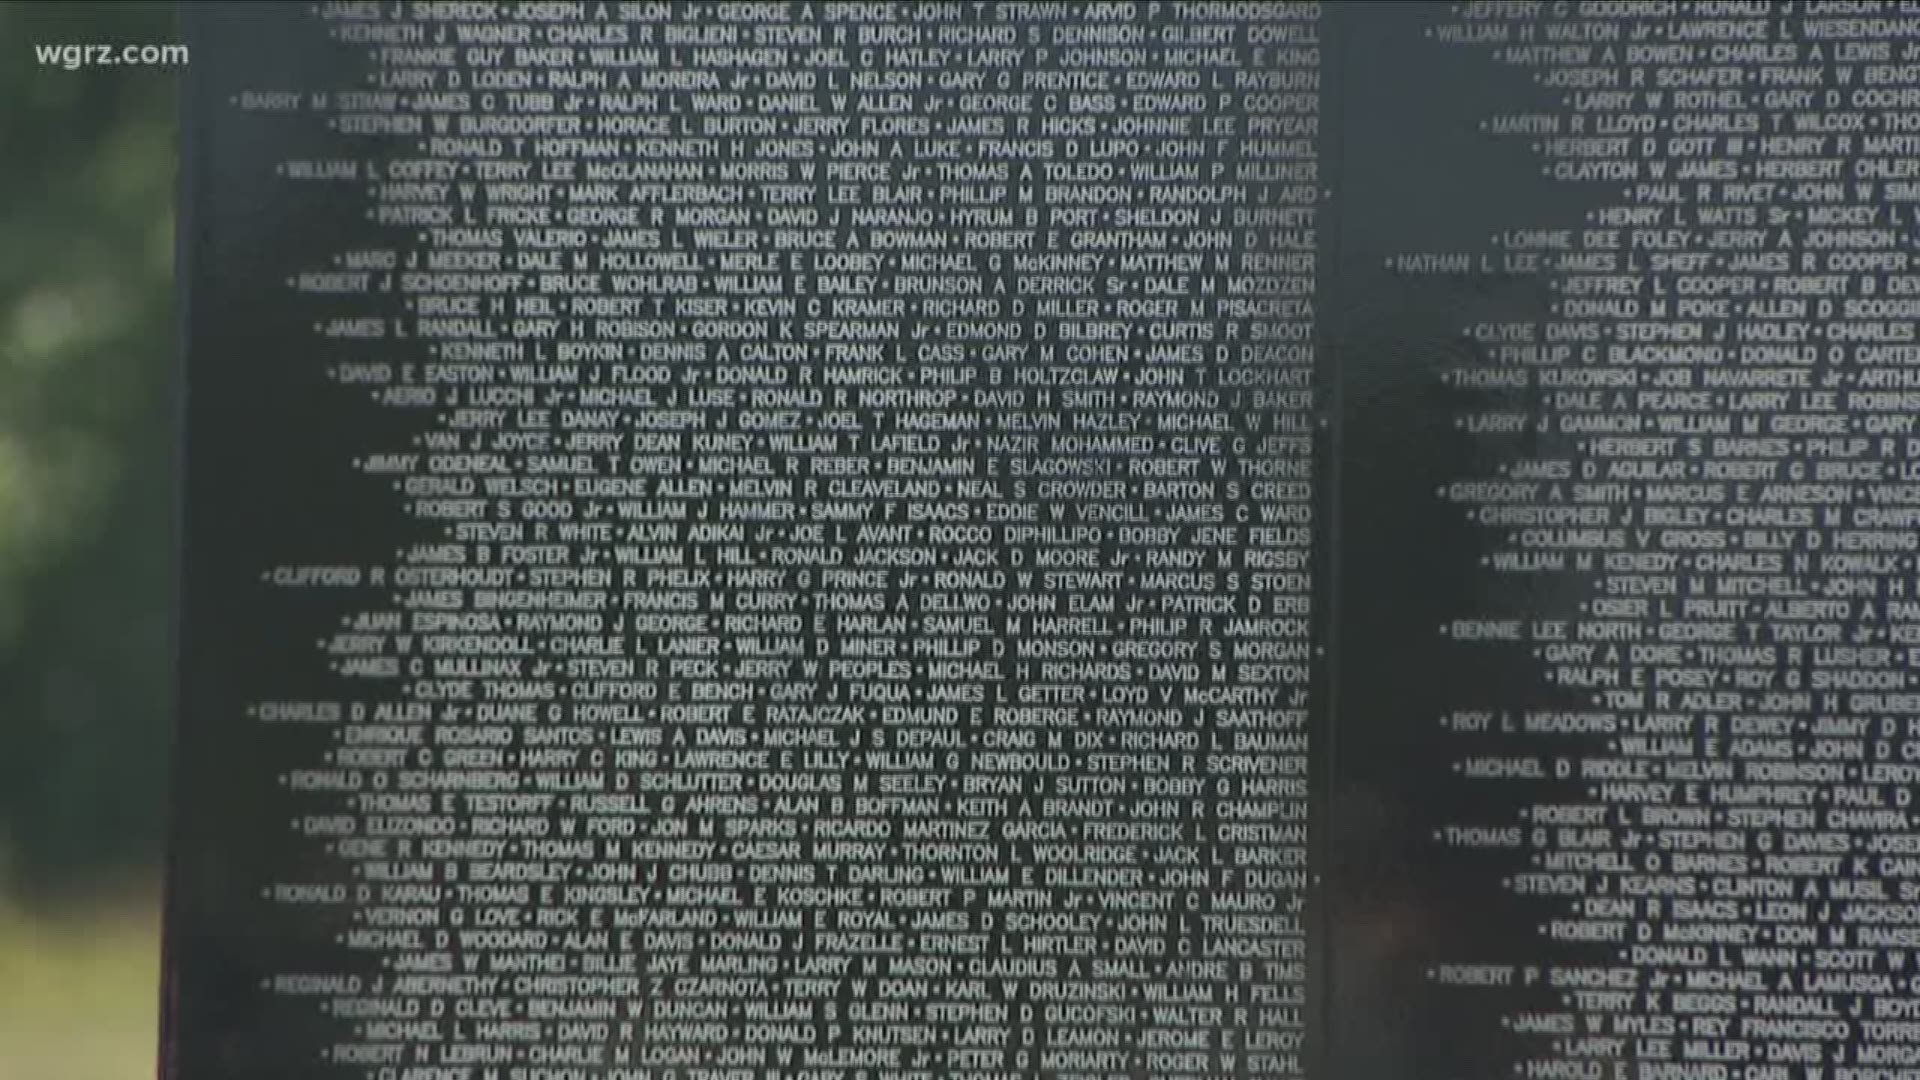 Vietnam Veterans Memorial Wall Arrives In WNY